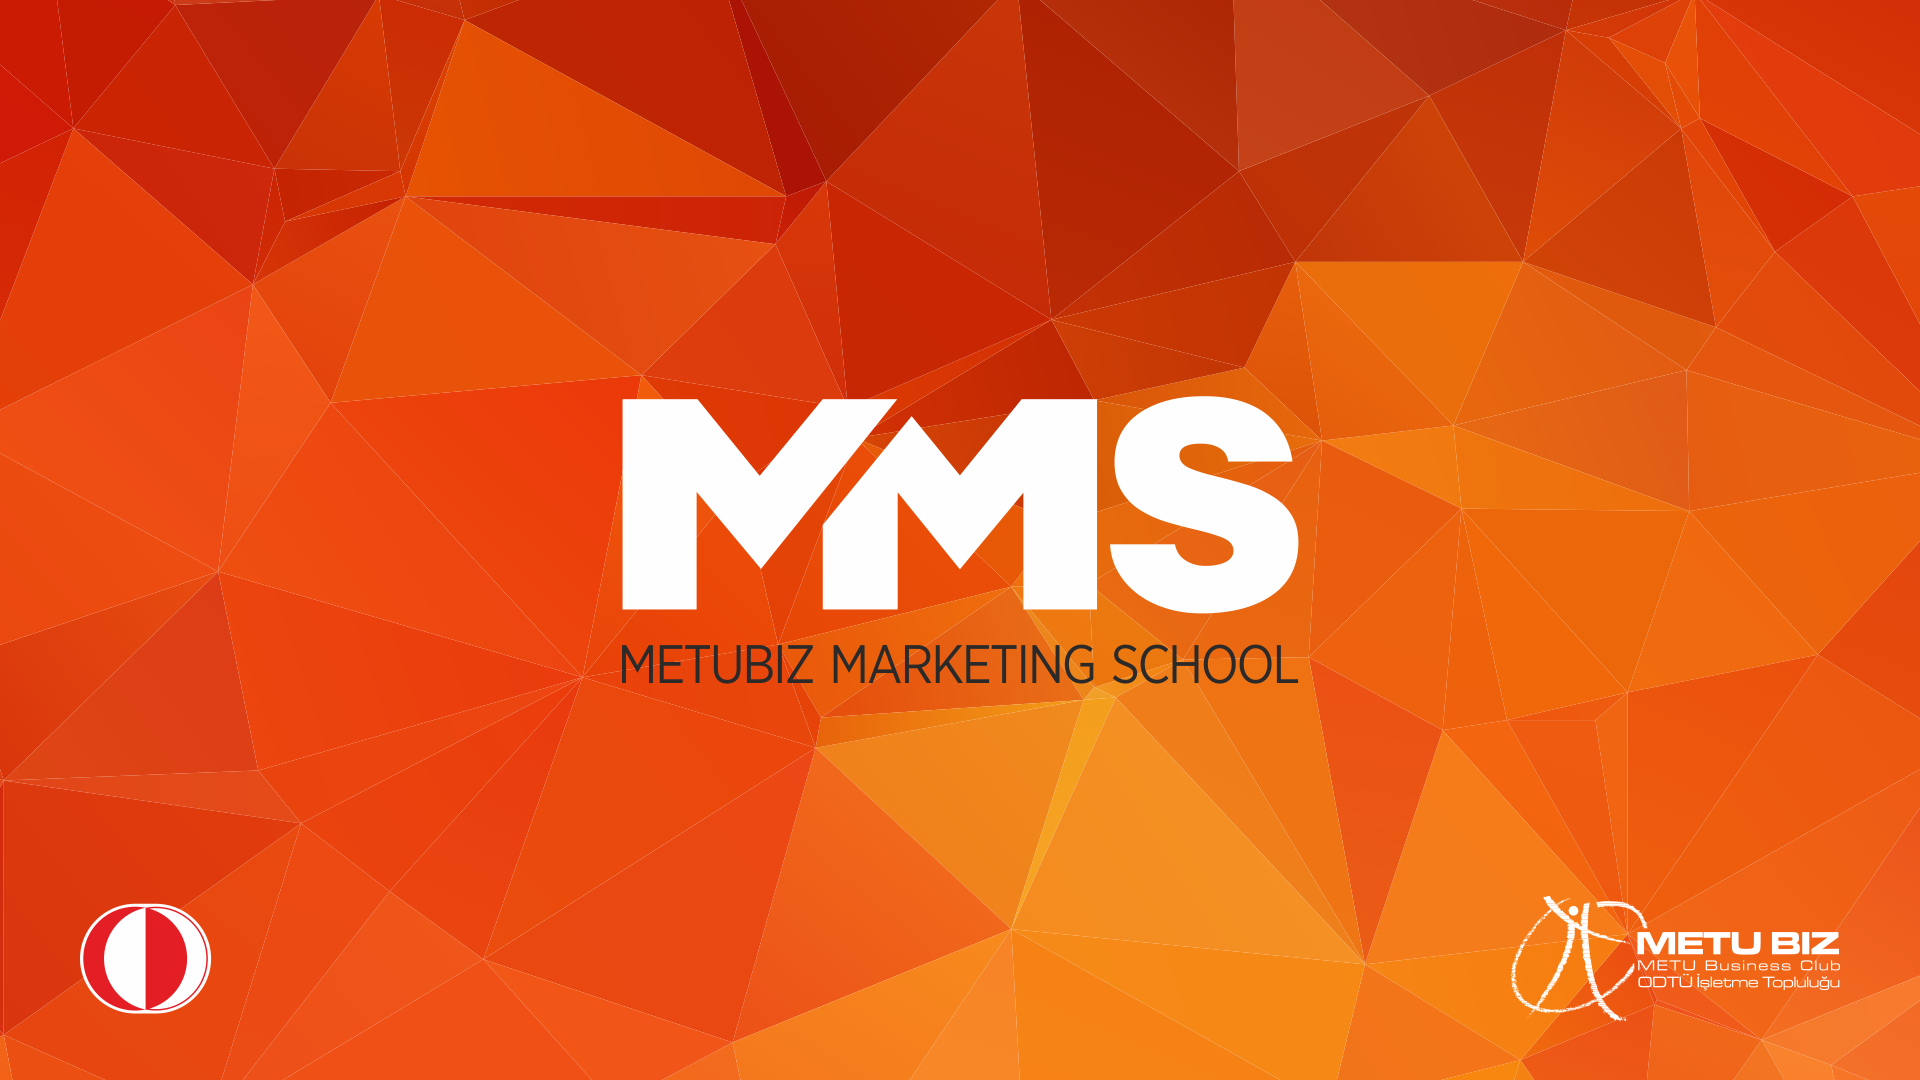 Metubiz Marketing School